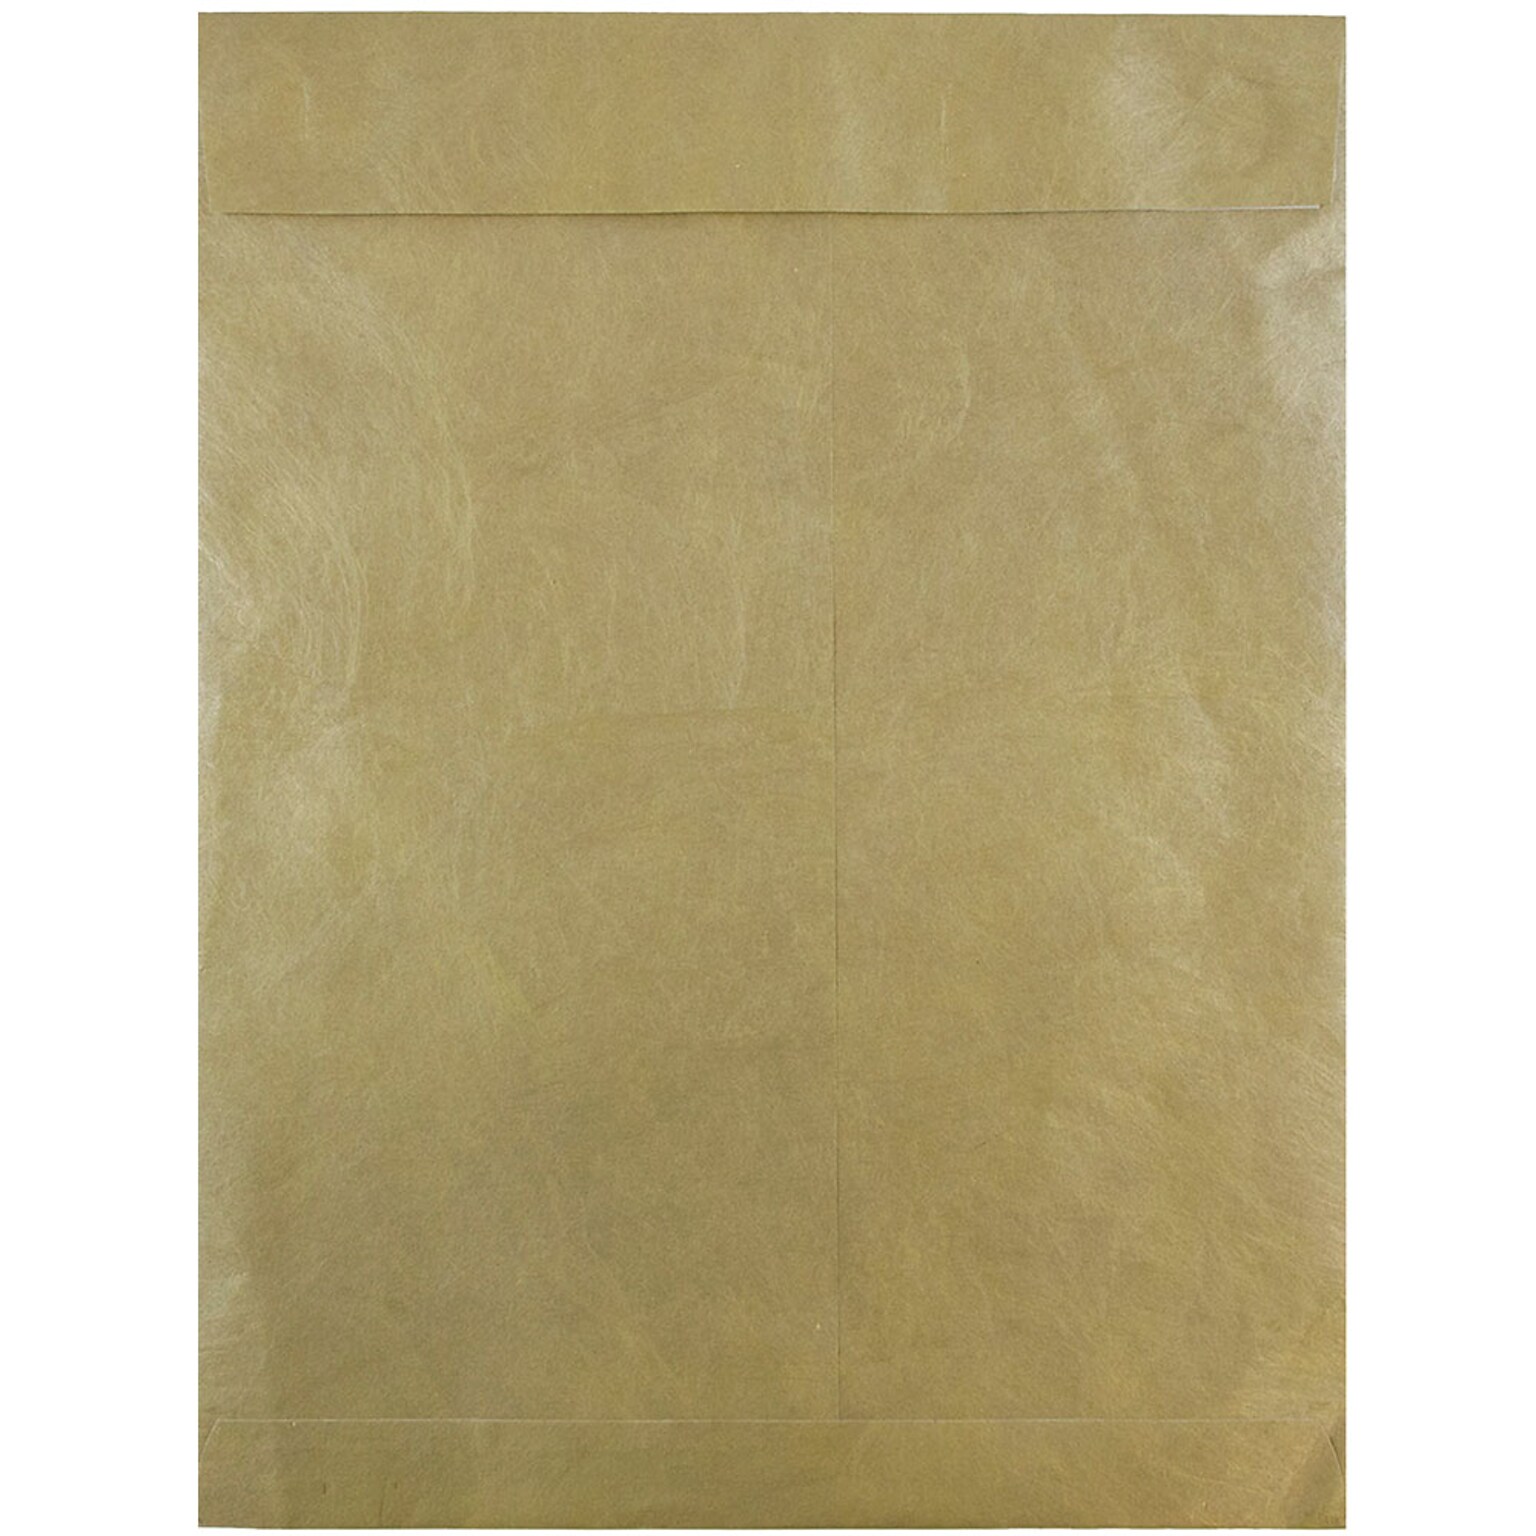 JAM Paper Tear-Proof Tyvek Open End Catalog Envelopes, Gold, 10 x 13, 25/Pack (V021378)